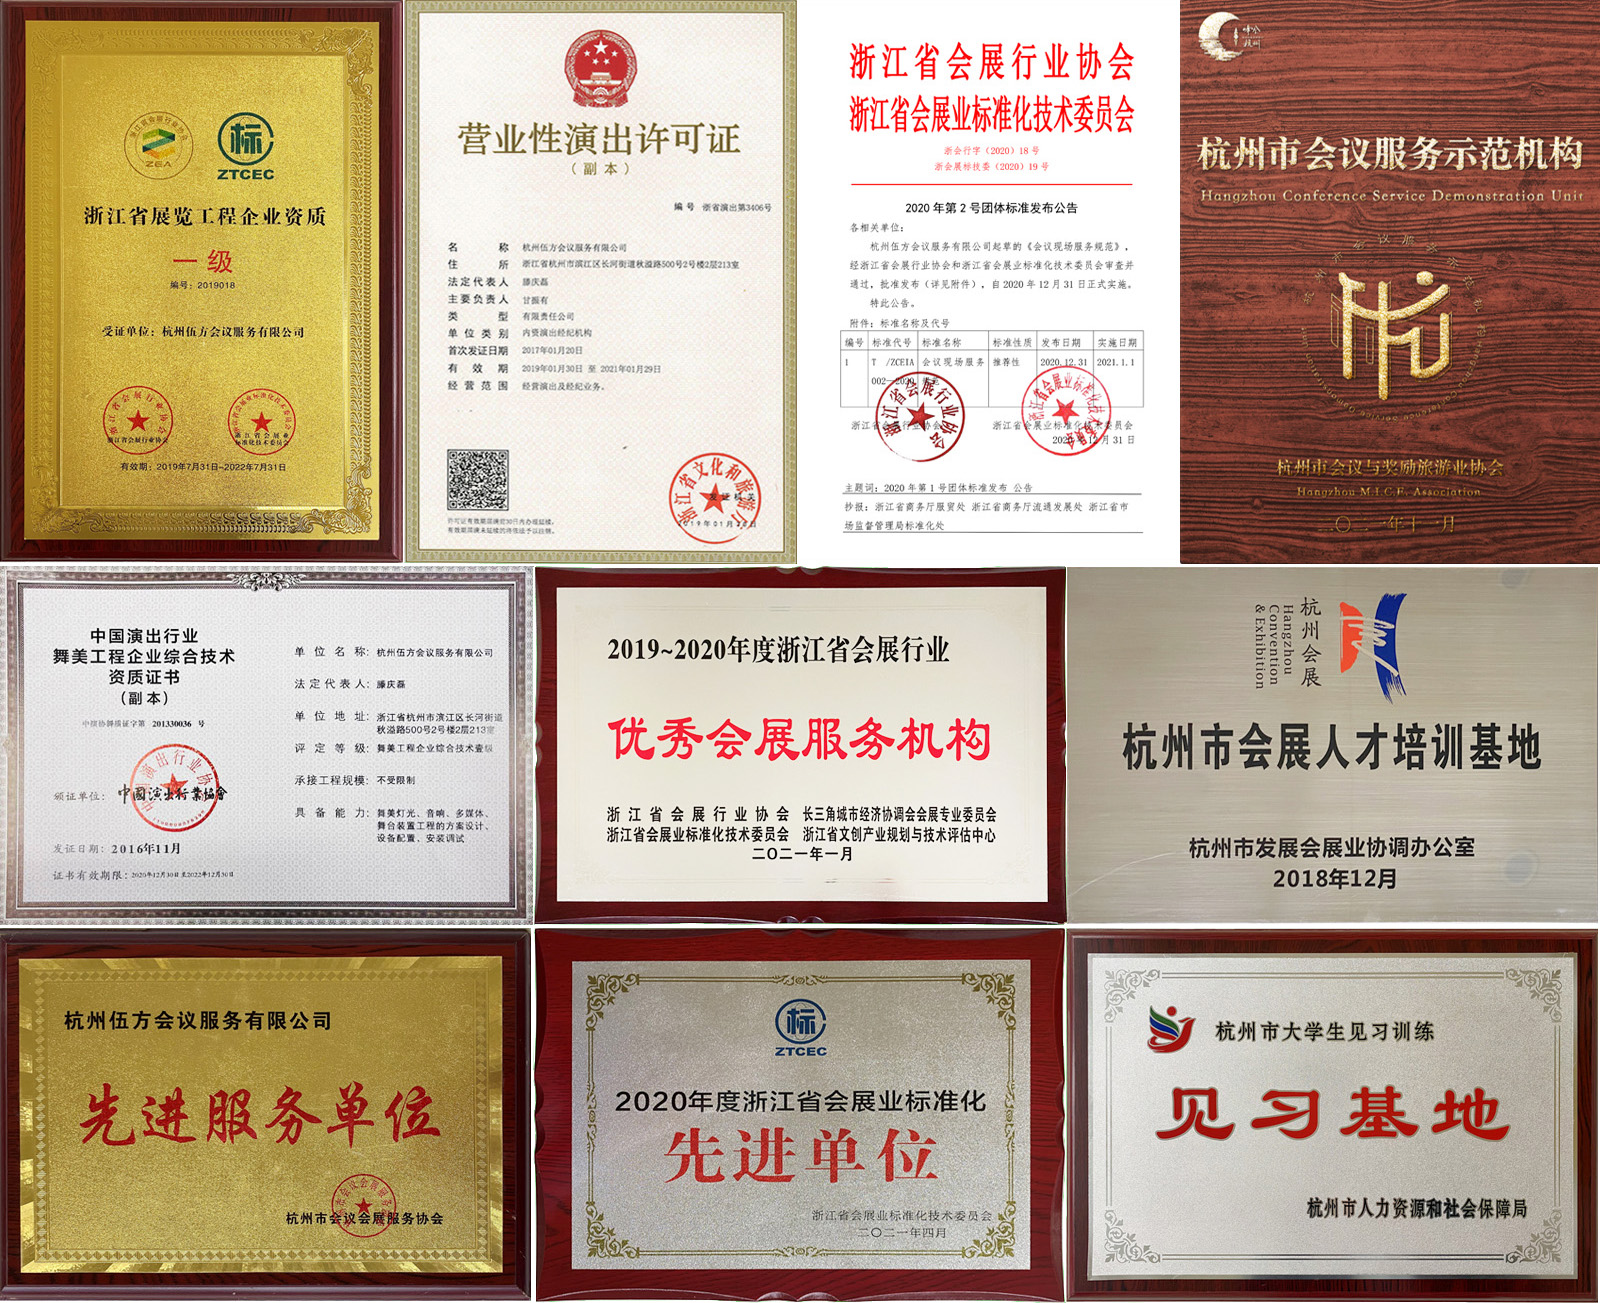 杭州伍方会议服务有限公司资质荣誉证书